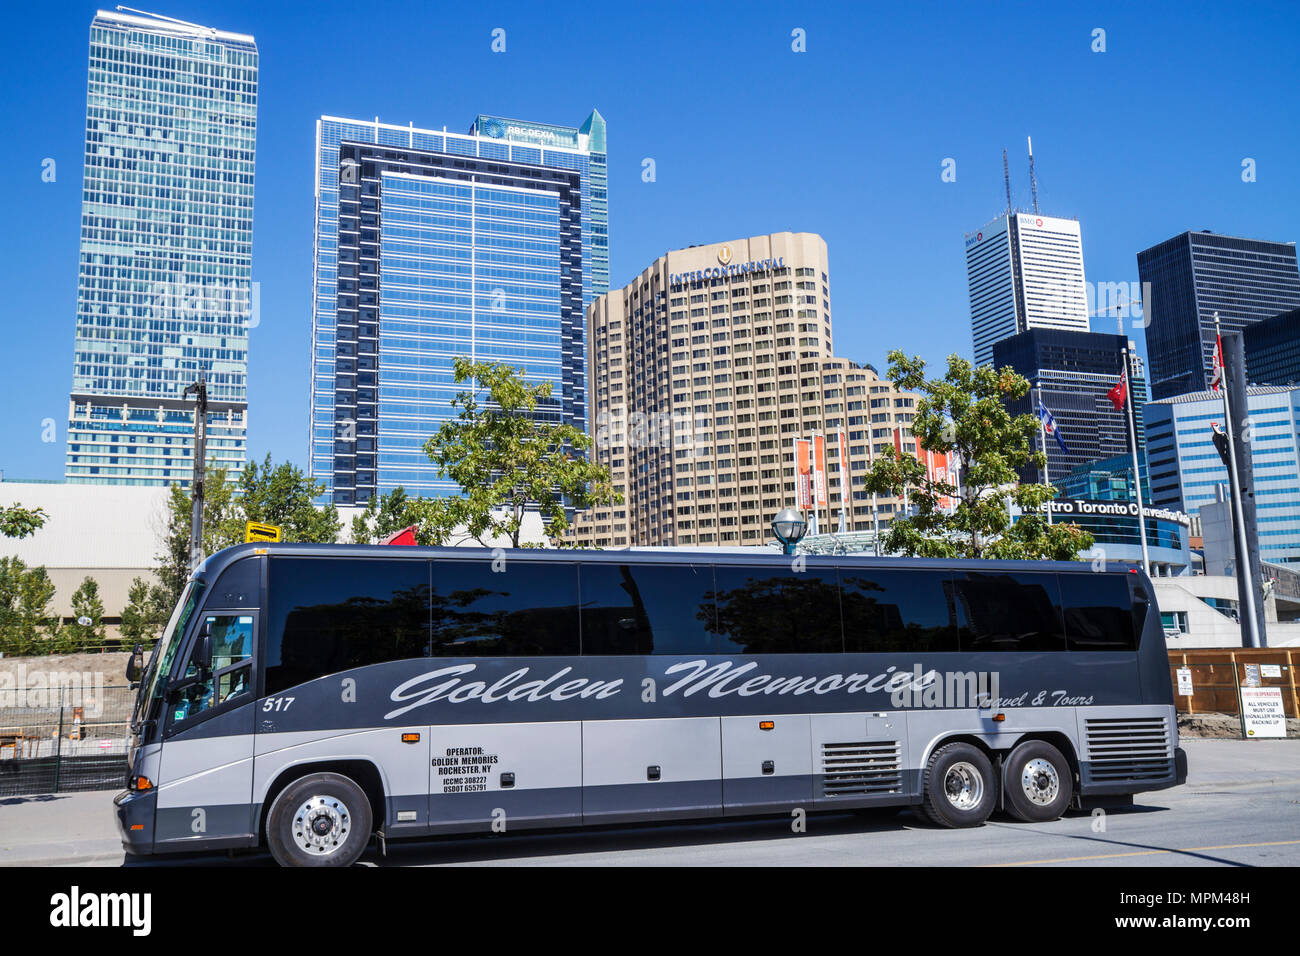 Toronto Canadá, Bremner Boulevard, Centro de Convenciones, exterior, frente, entrada, Golden Memories Transportation, alquiler de autobuses, autobús, transporte, cielo Foto de stock